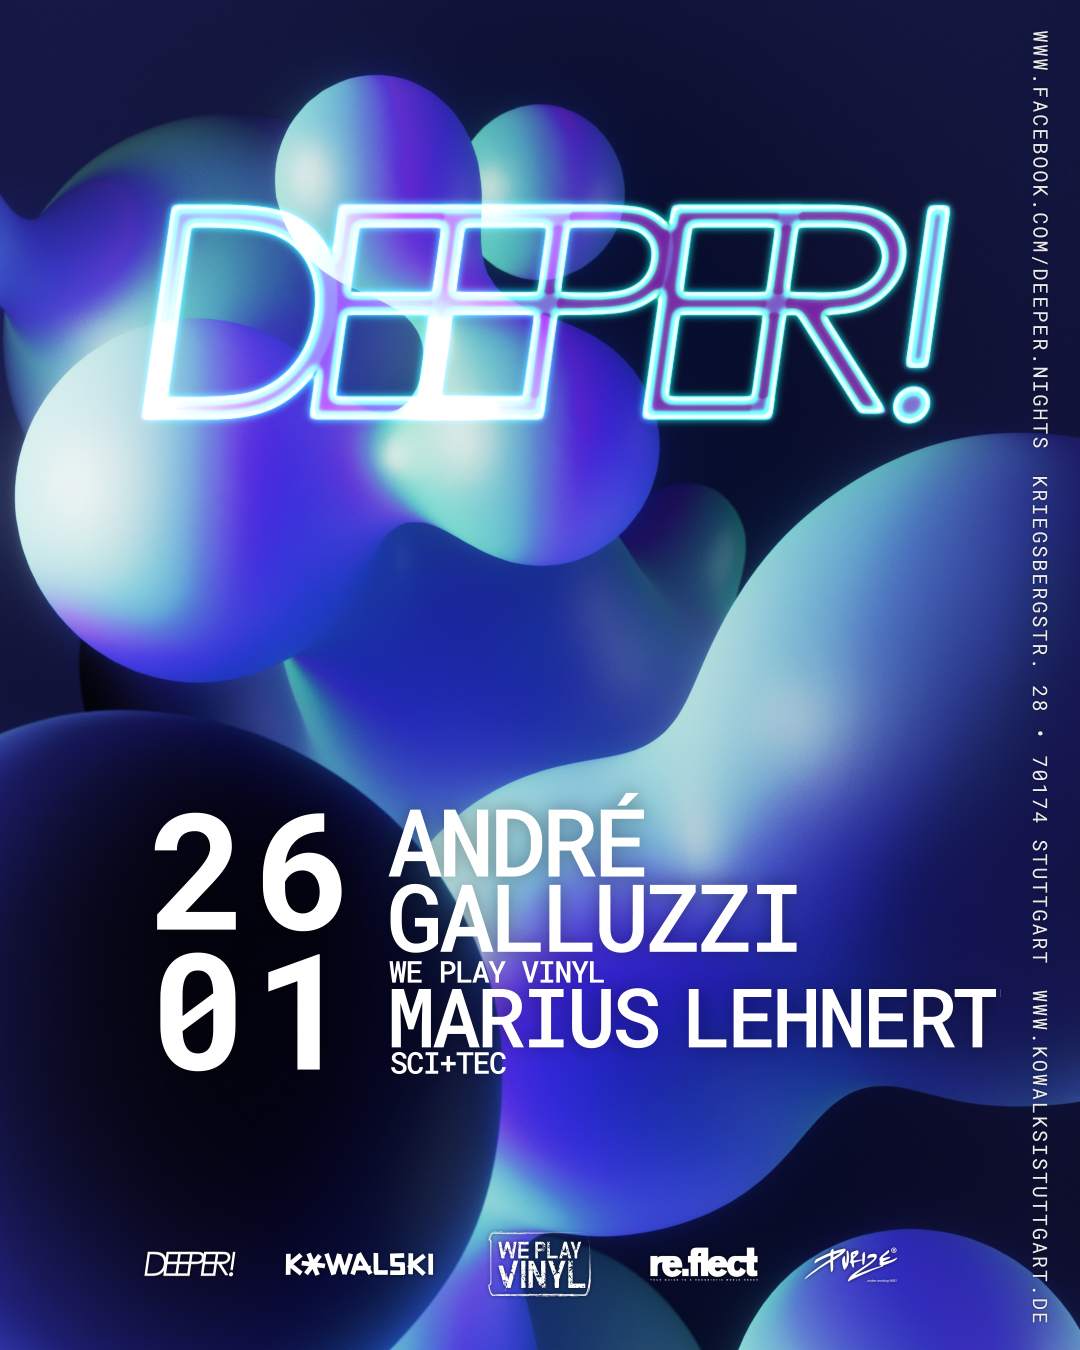 DEEPER! feiert großes Finale mit André Galluzzi & Marius Lehnert at  Kowalski, Stuttgart